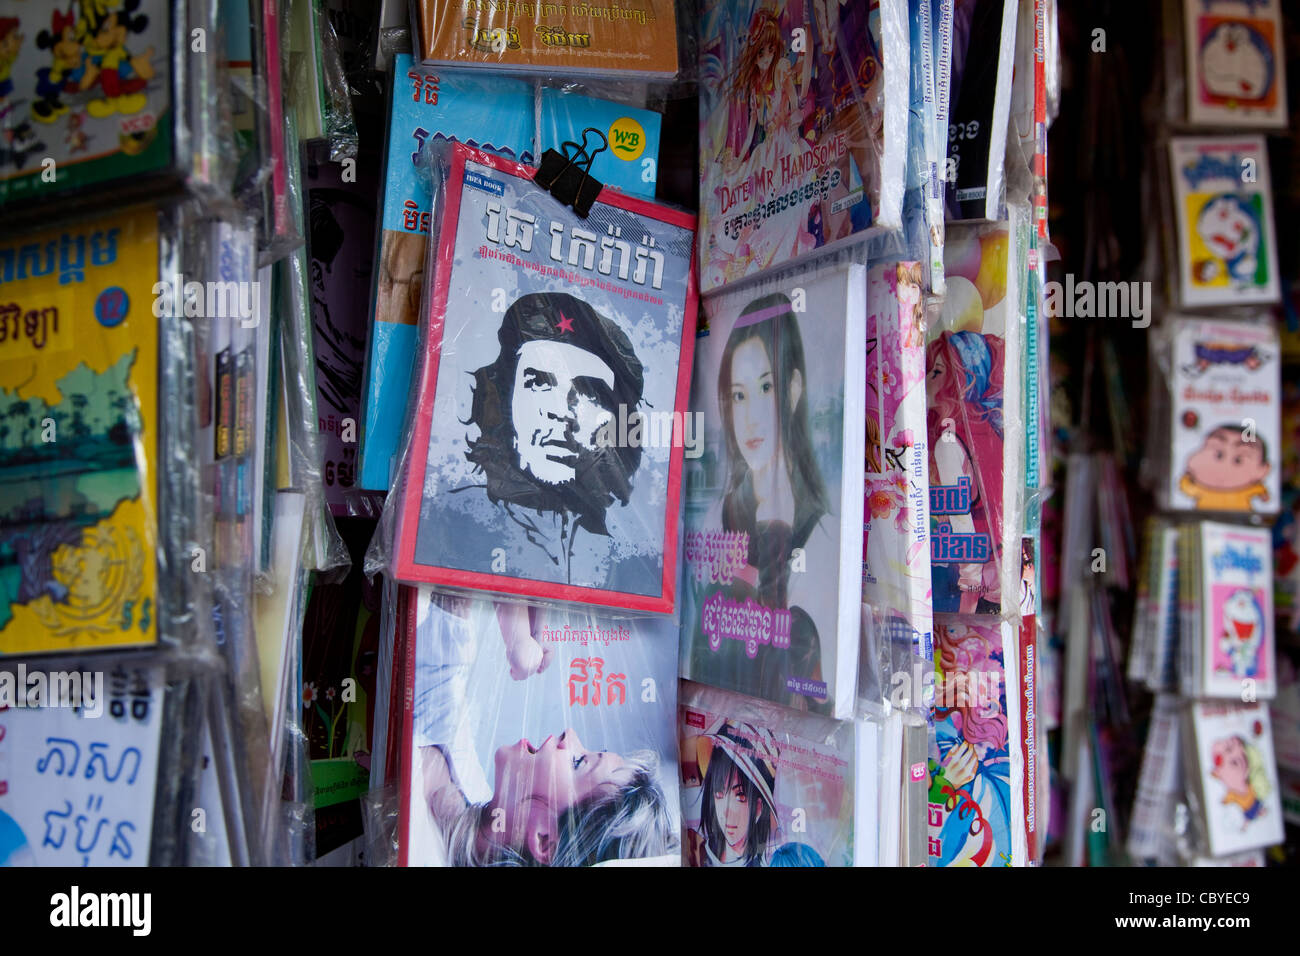 Buchhandlung verkaufen Bücher und Che Guevara Bild, Phnom Penh, Kambodscha, Asien Stockfoto